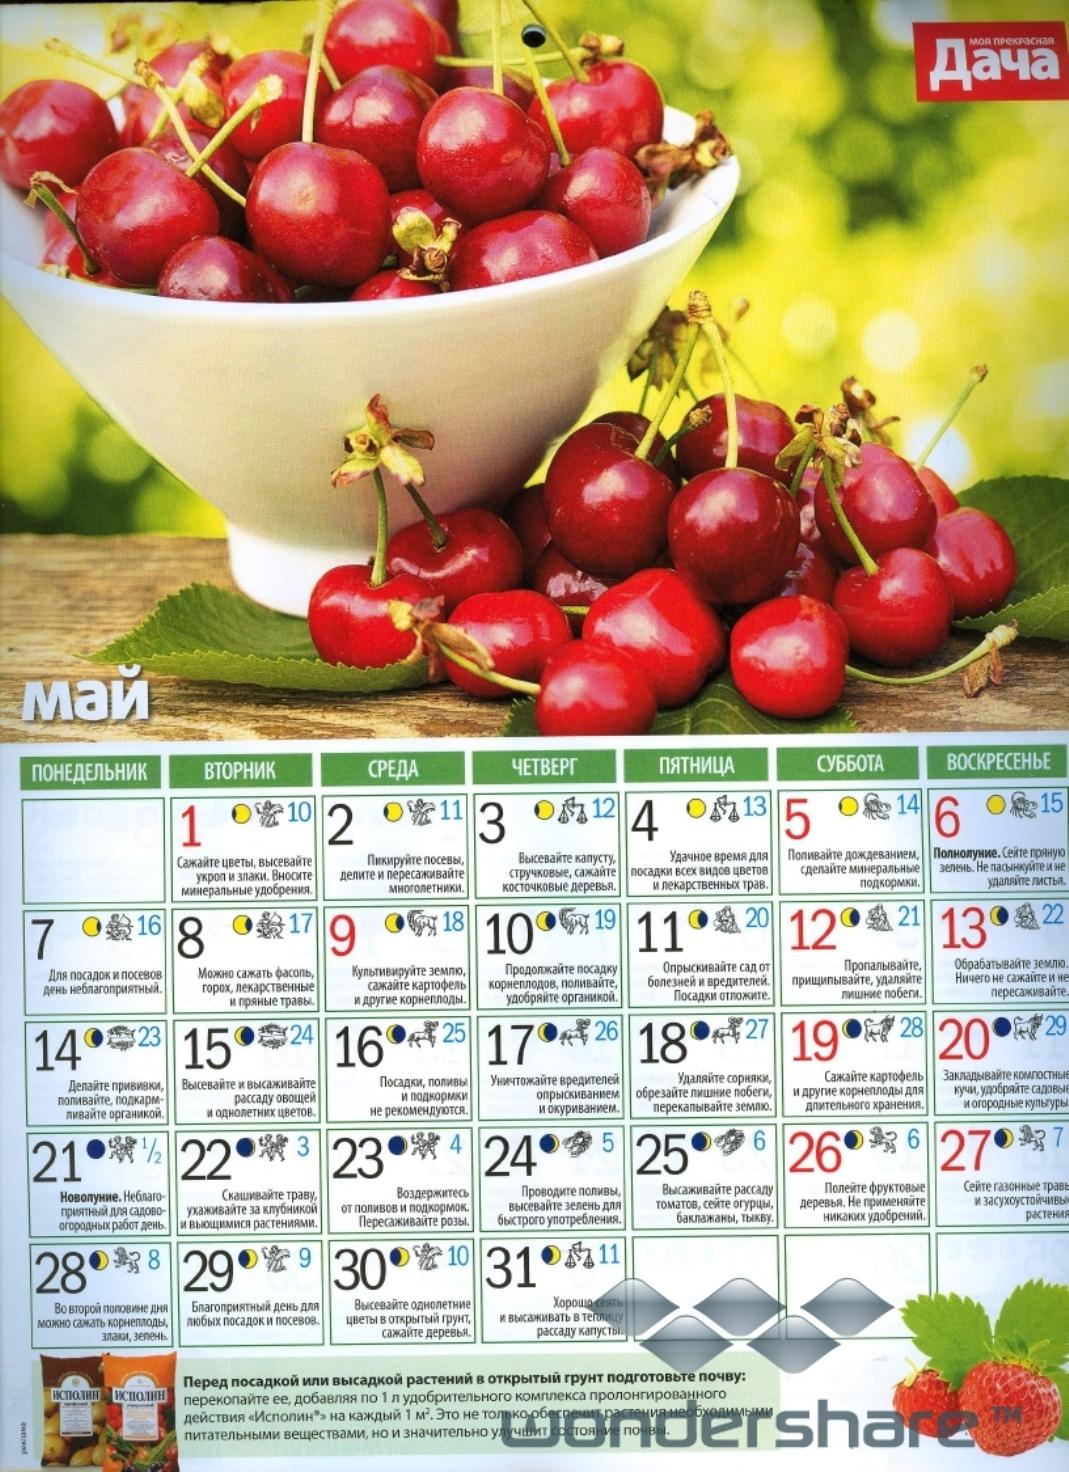 Mircosmosa ru лунный. Дачный календарь. Календарь посадки корнеплодов. Календарь посадки цветов в саду. Календарь садовых работ.